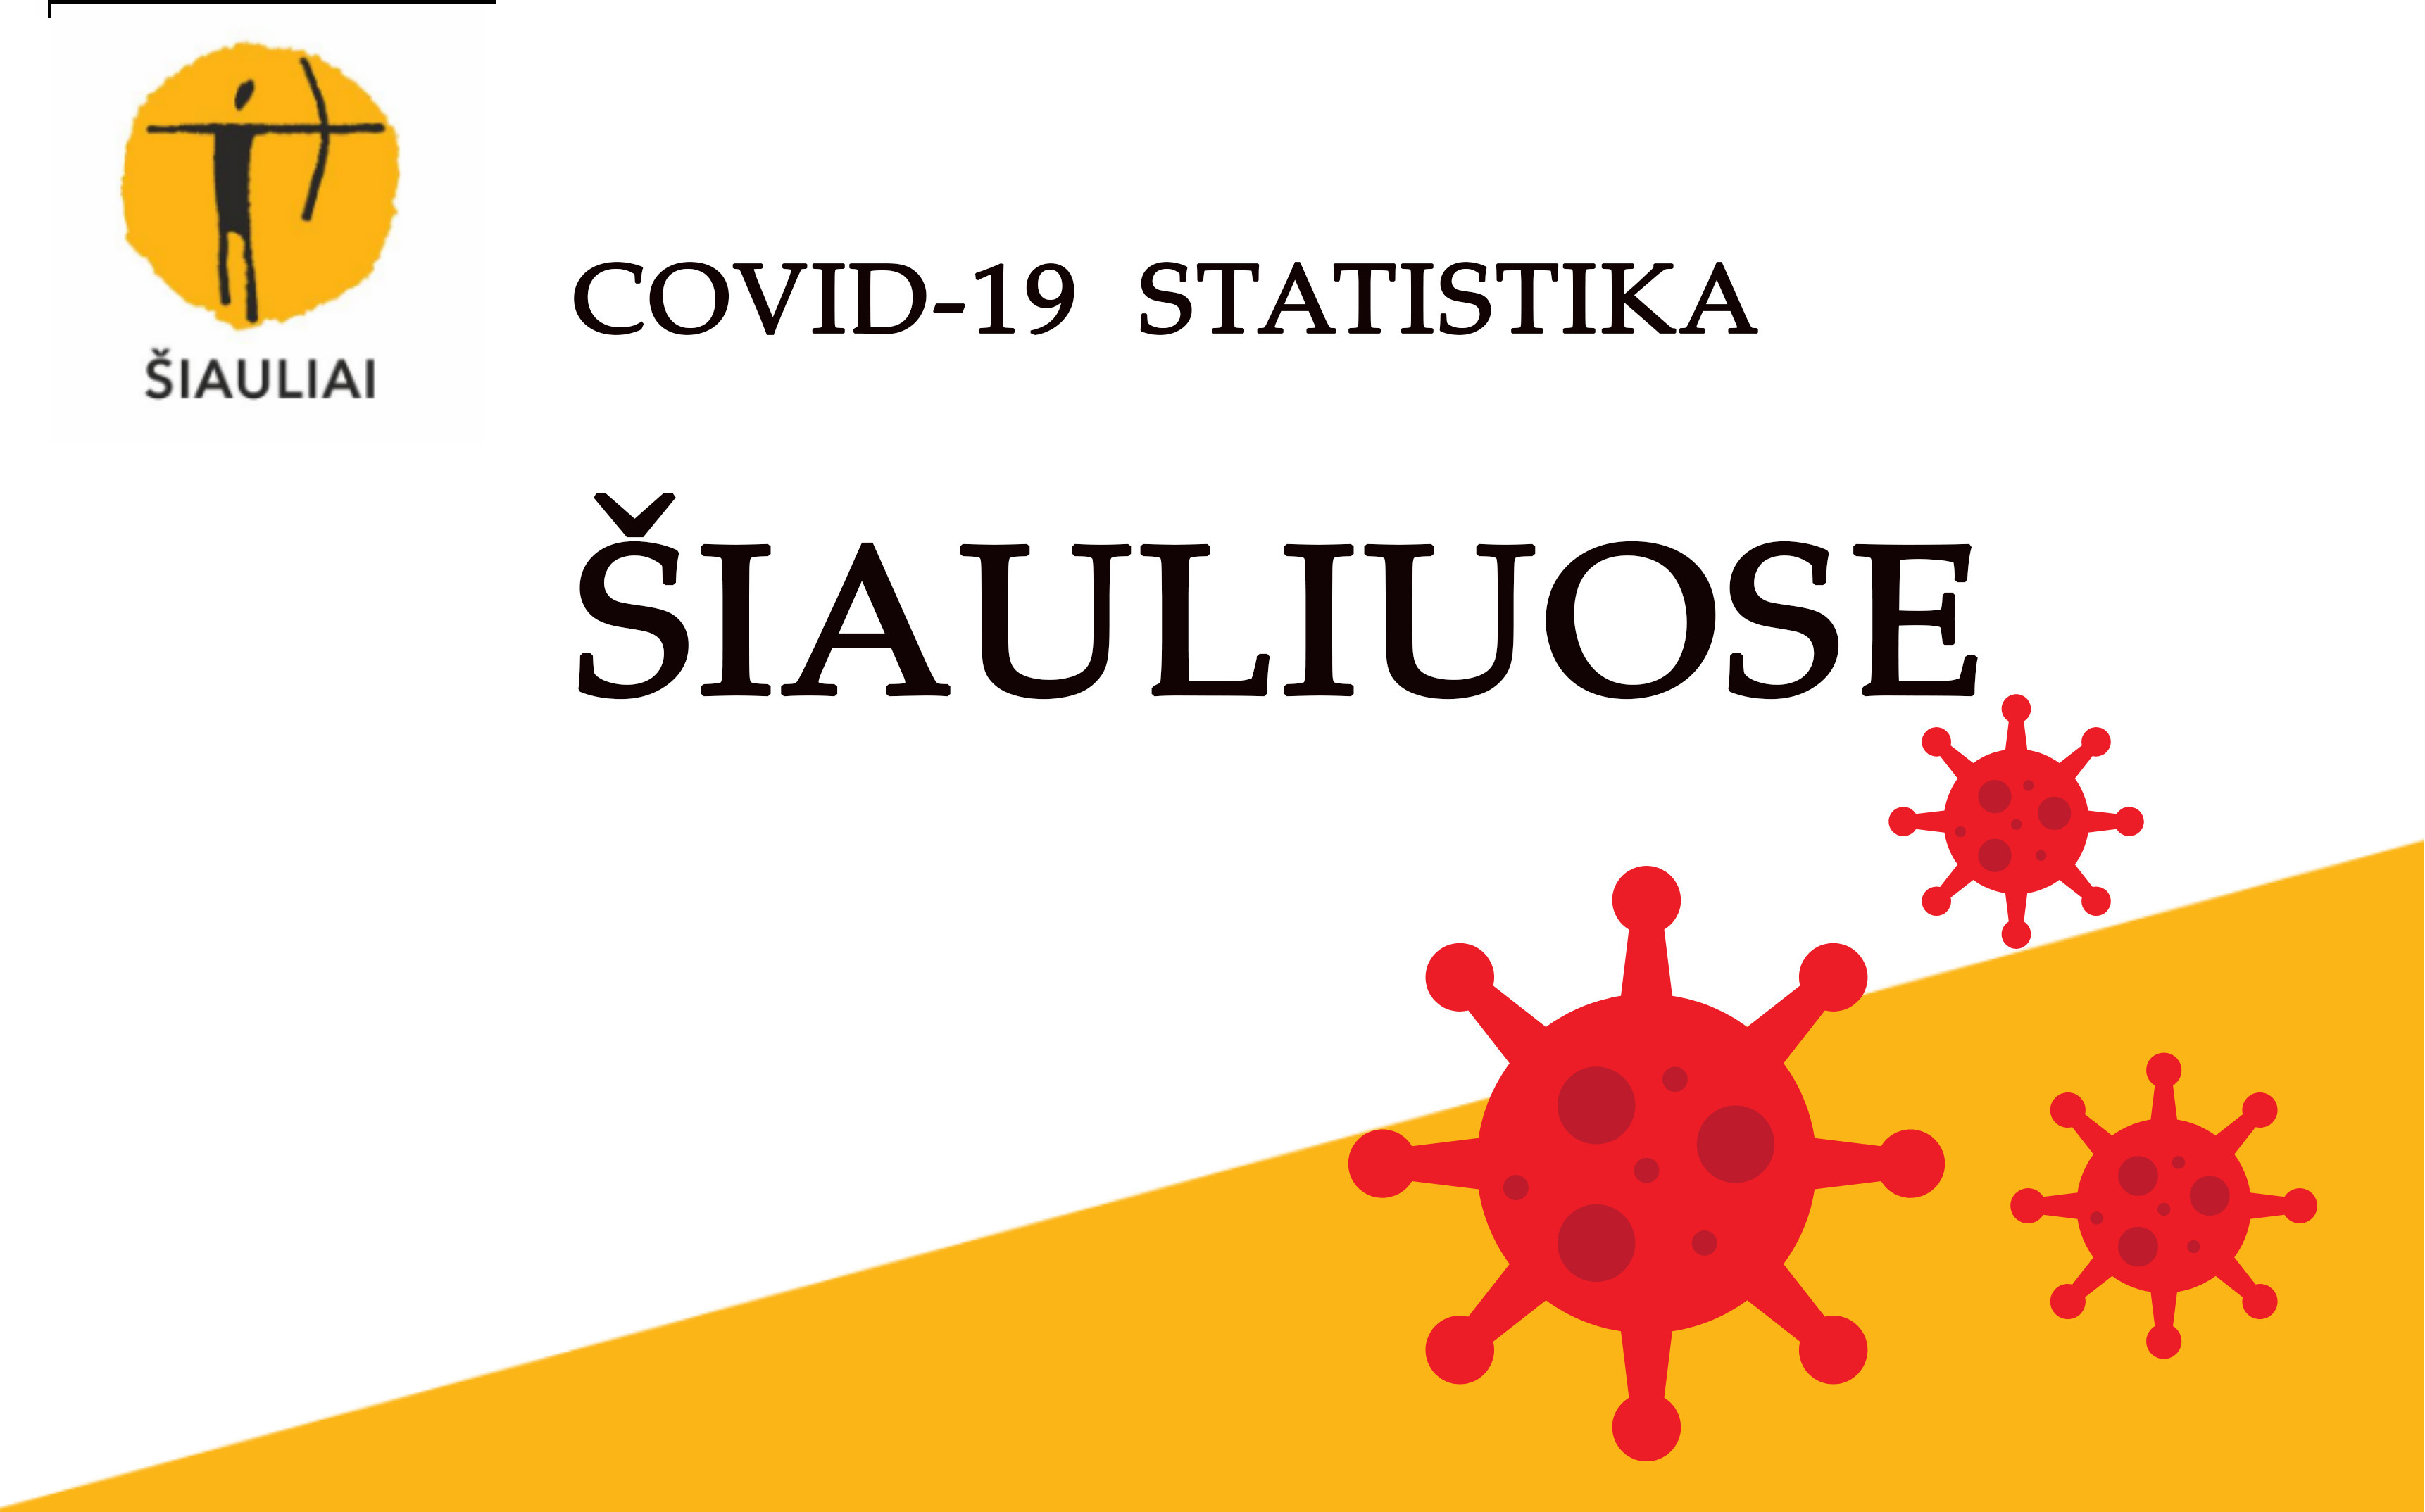 COVID-19 statistika